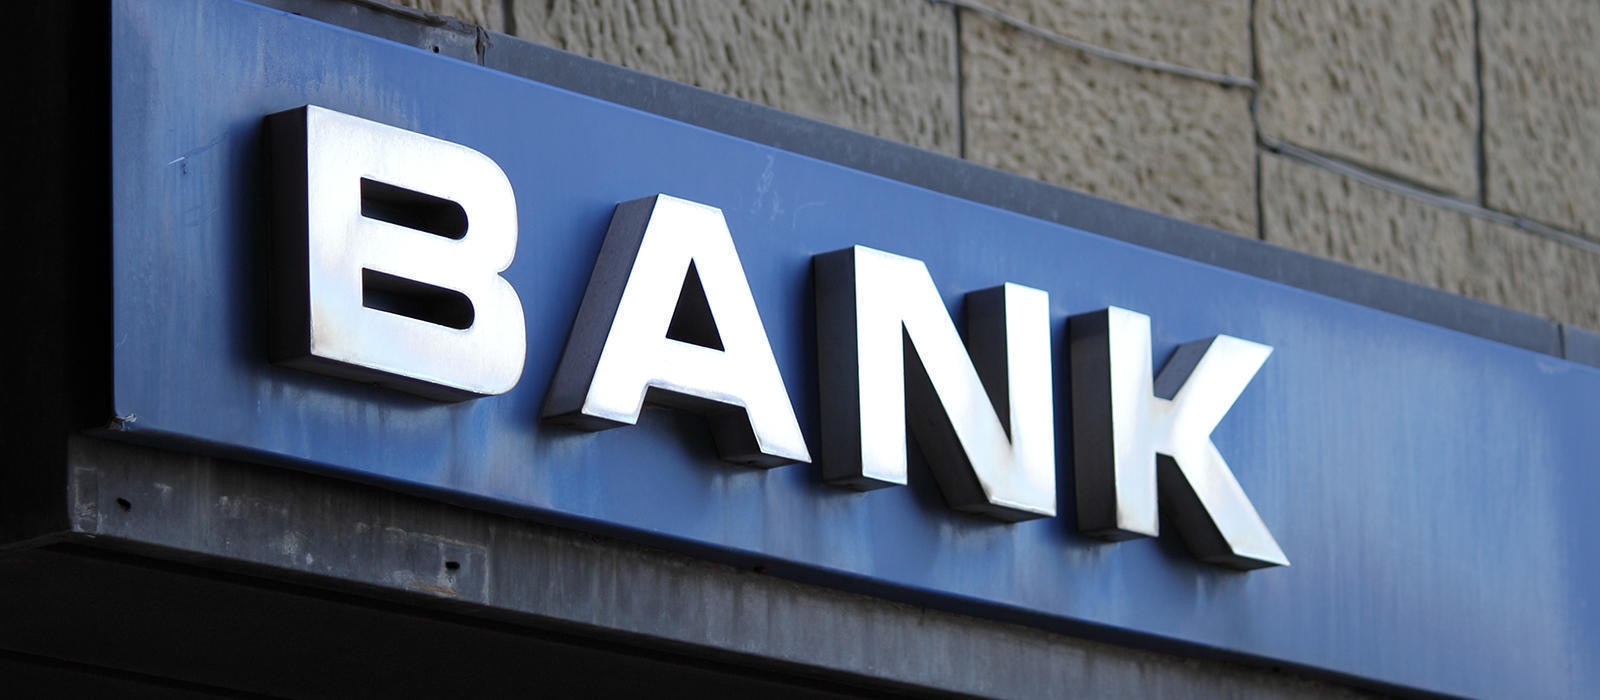 Τράπεζες: Ποιες συναλλαγές διενεργούνται χωρίς φυσική παρουσία στα καταστήματα